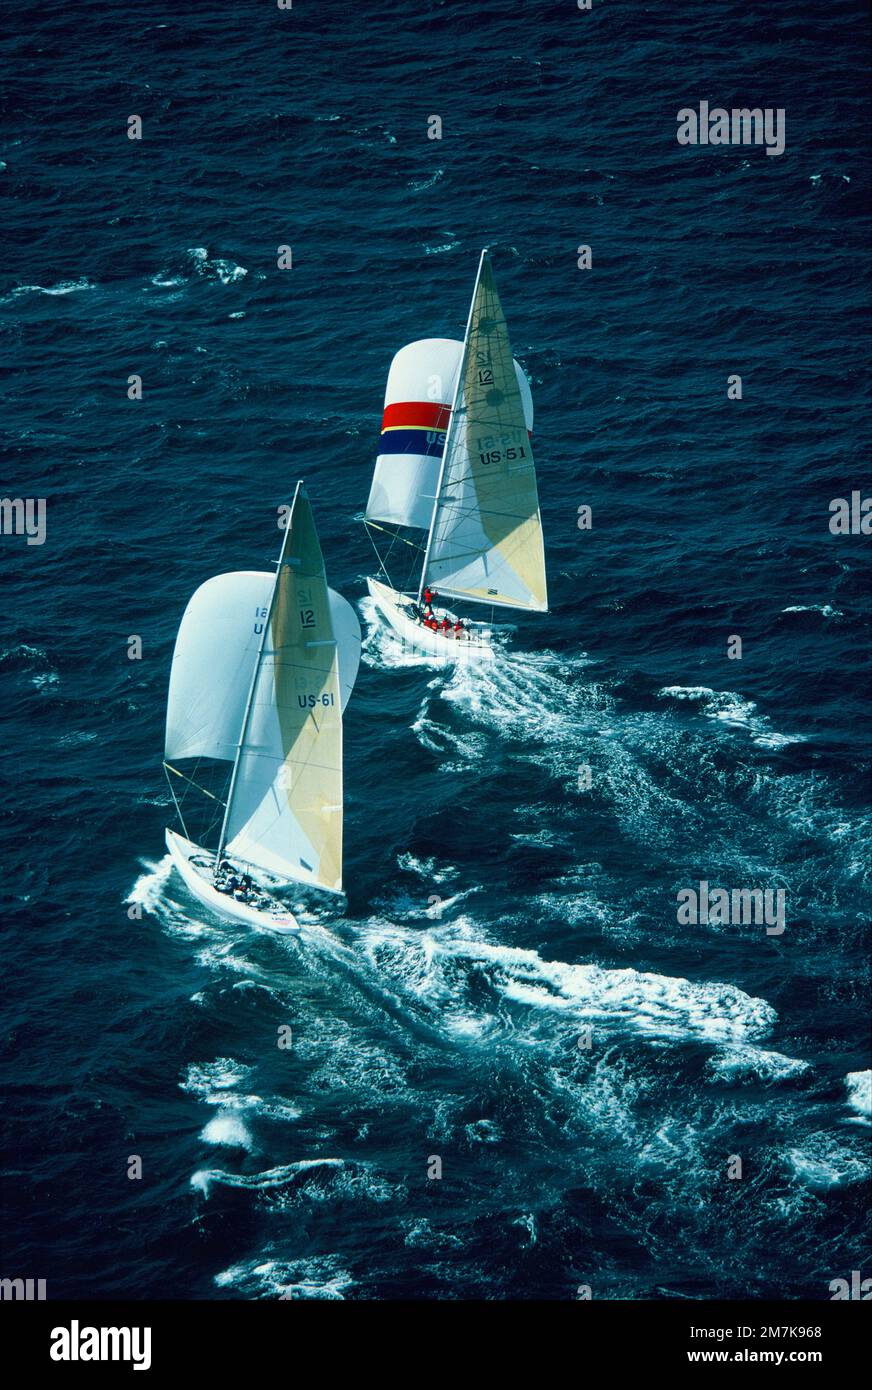 Australia. Fremantle. Gara di yacht America's Cup. 1986. Vista aerea posteriore di due yacht. Il cuore dell'America davanti all'R-1 degli Stati Uniti. Foto Stock